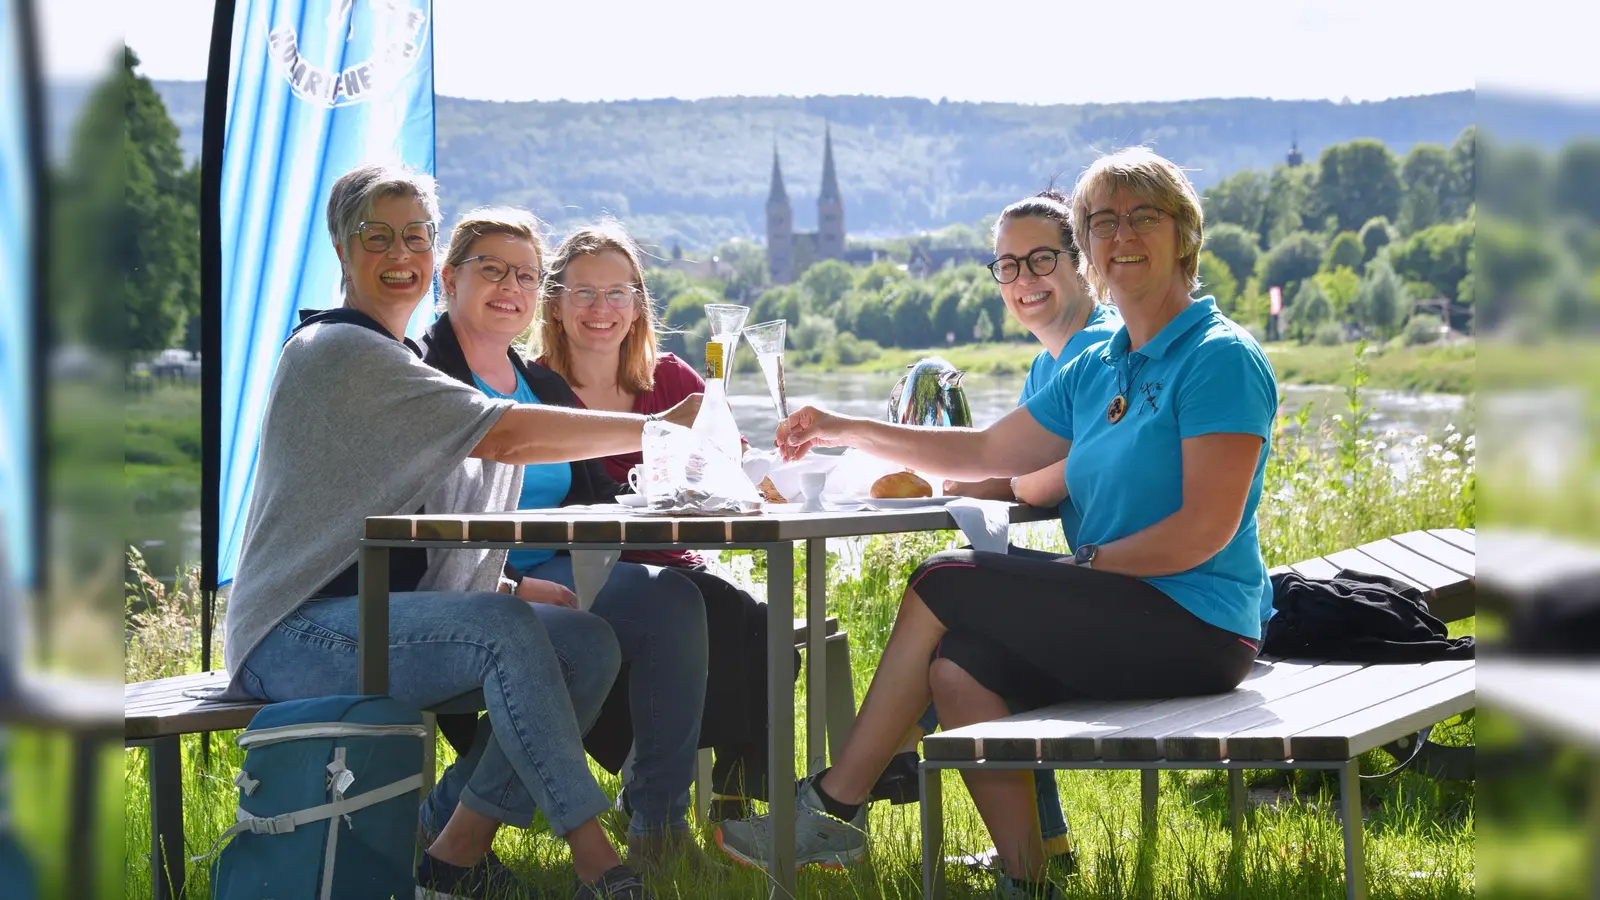 Laden ein zum Frühstück (v.l.): Nicole Meyer, Simone Kube, Kerstin Schmidt, Diana Freytag und Michaela Bast. (Foto: Thomas Kube)